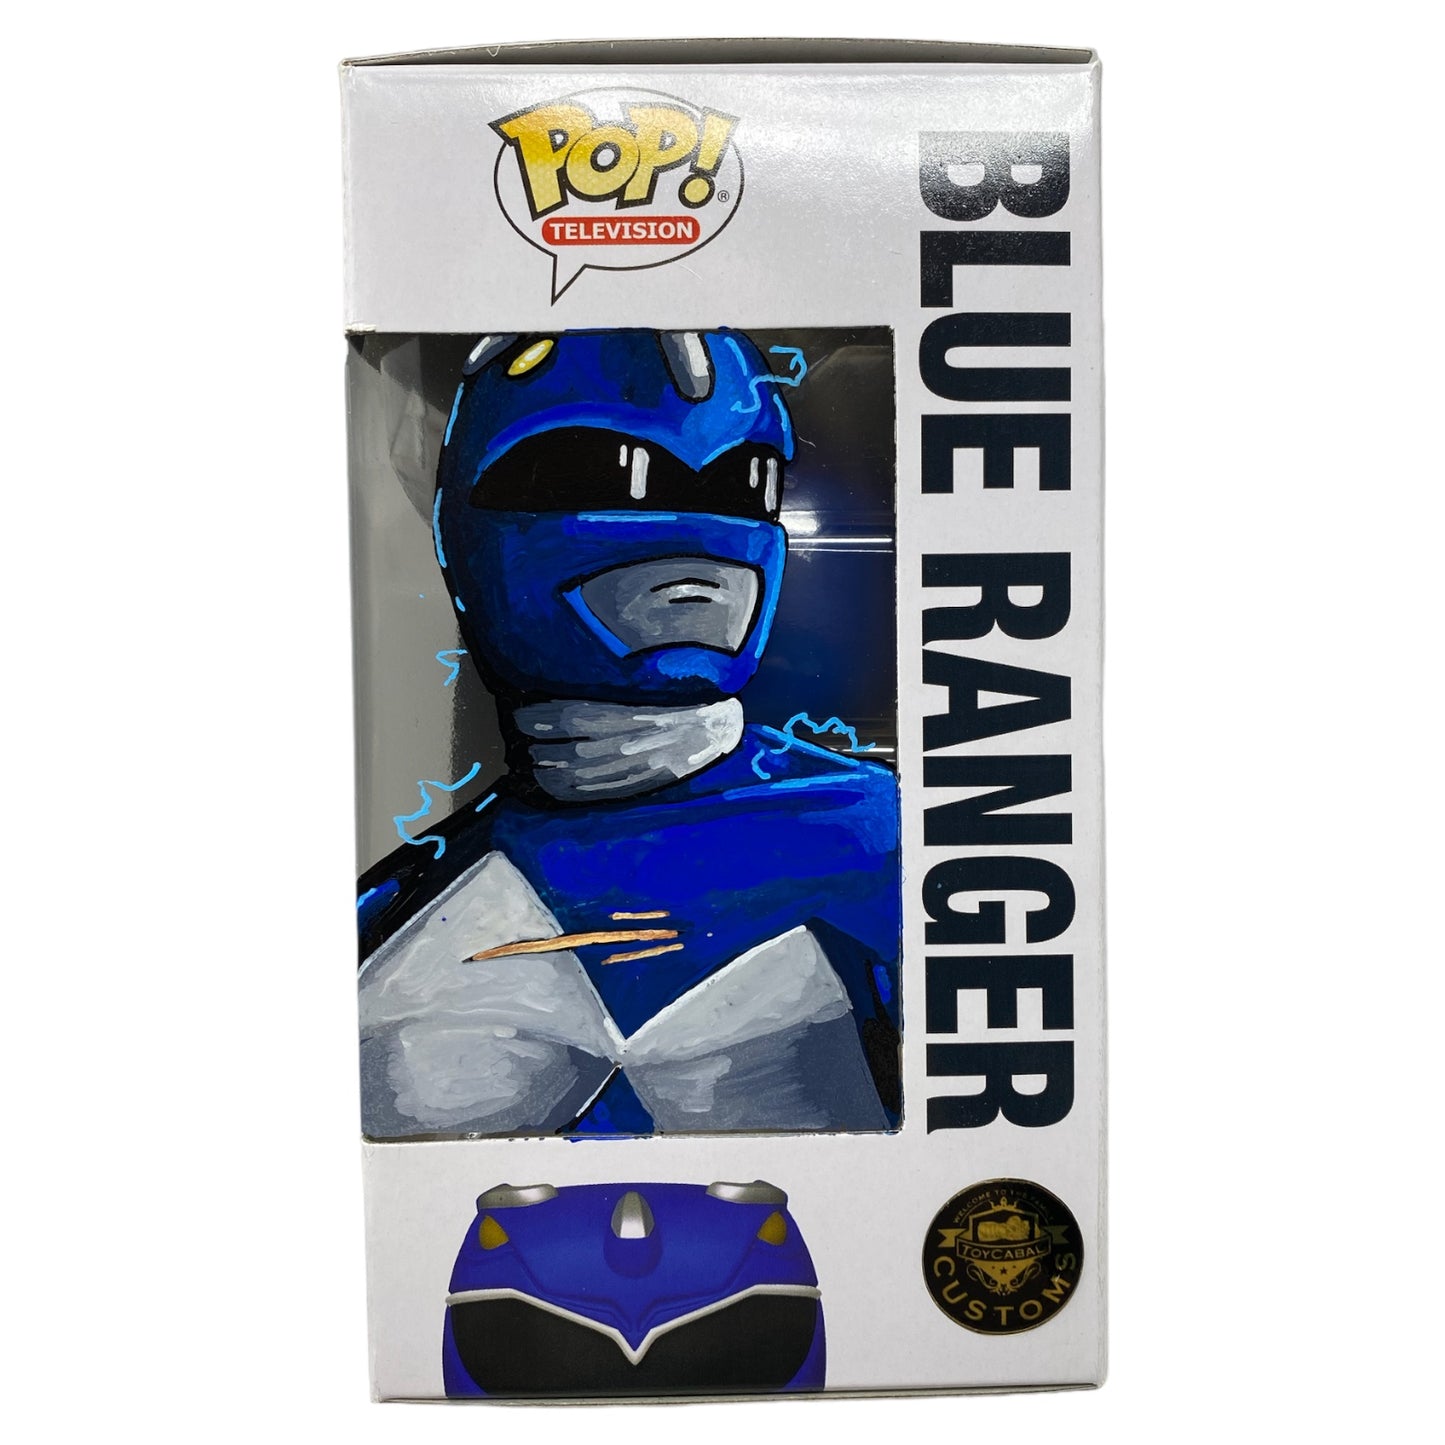 Retro - Blue Ranger 1372, TCC X “Mooch” Custom